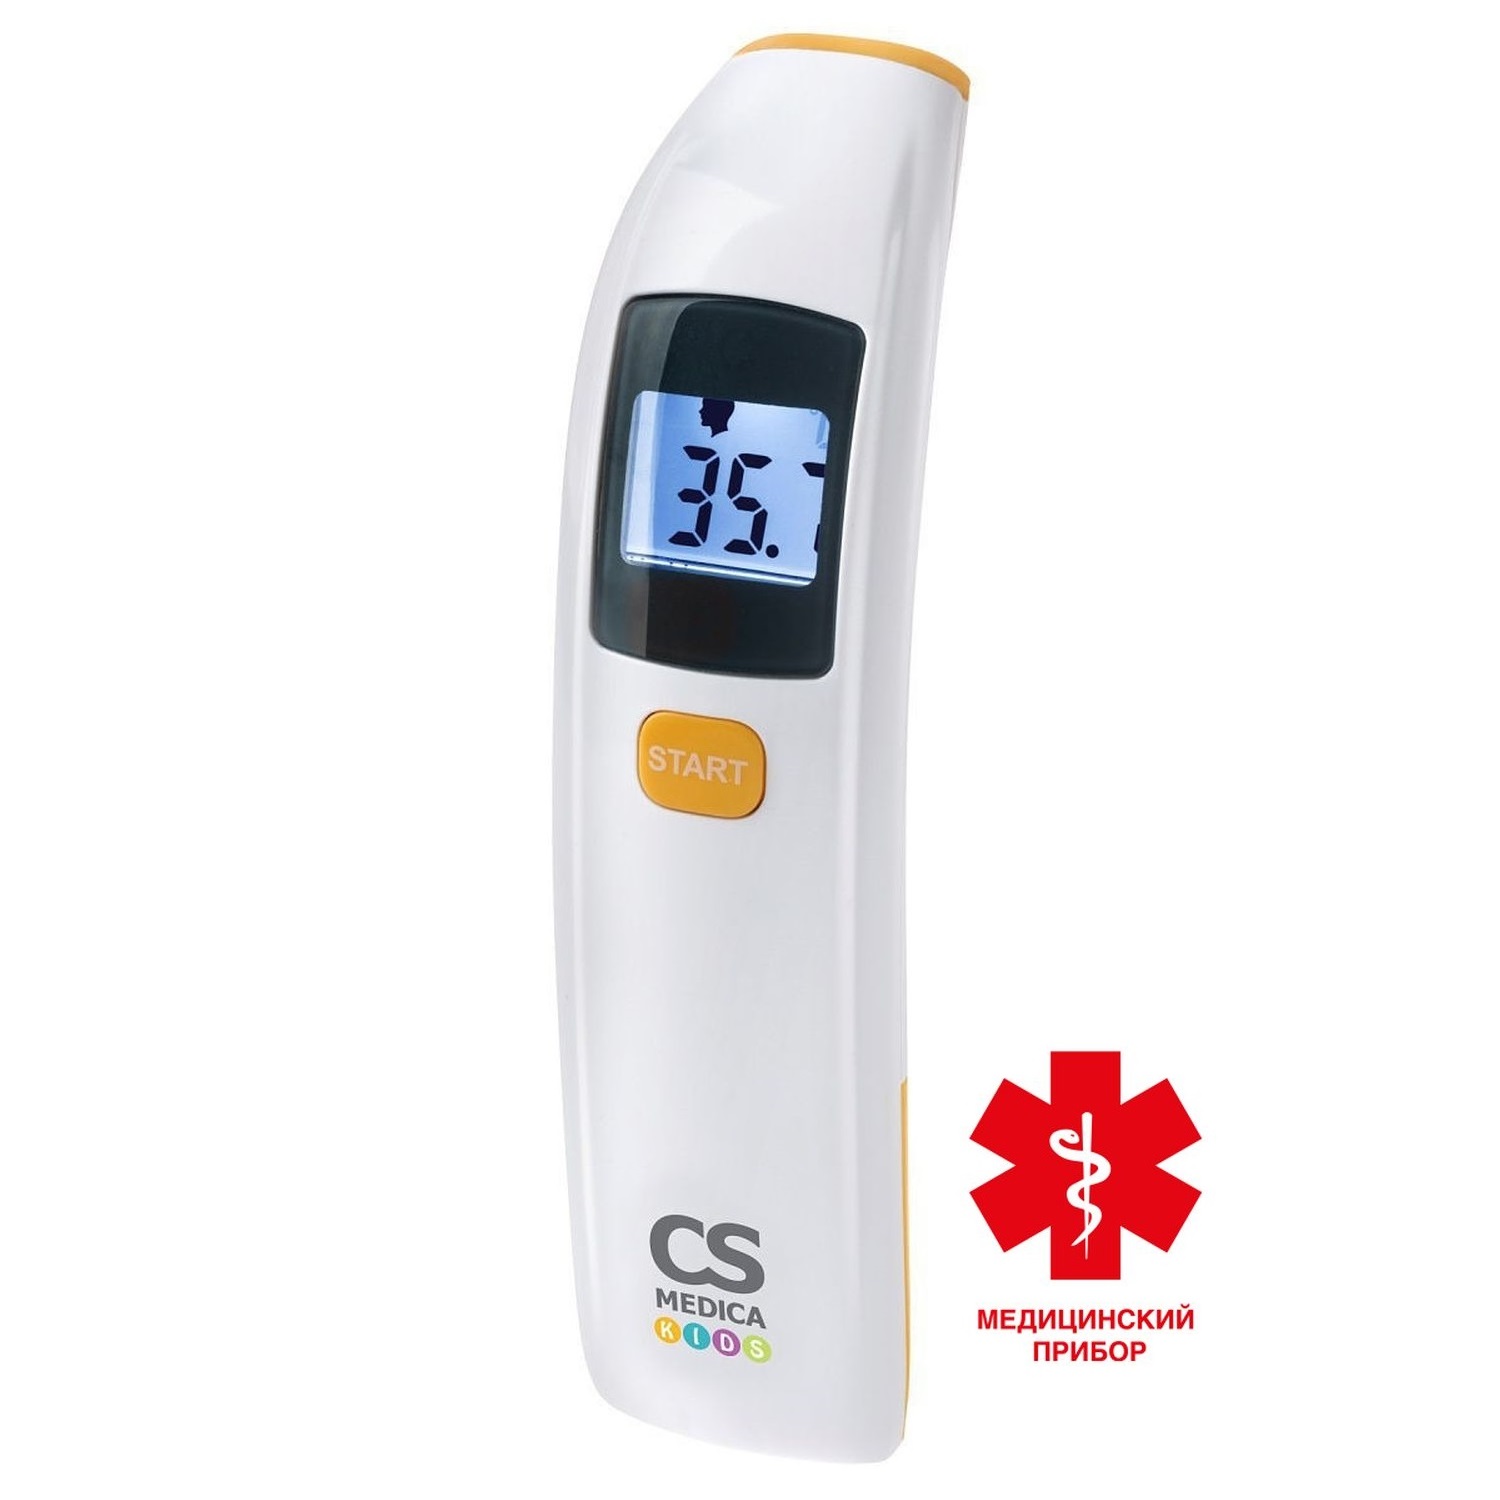 СиЭс Медика термометр электронный медицинский бесконтактный CS-88 термометр бесконтактный berrcom178 медицинский инфракрасный цифровой электронный градусник